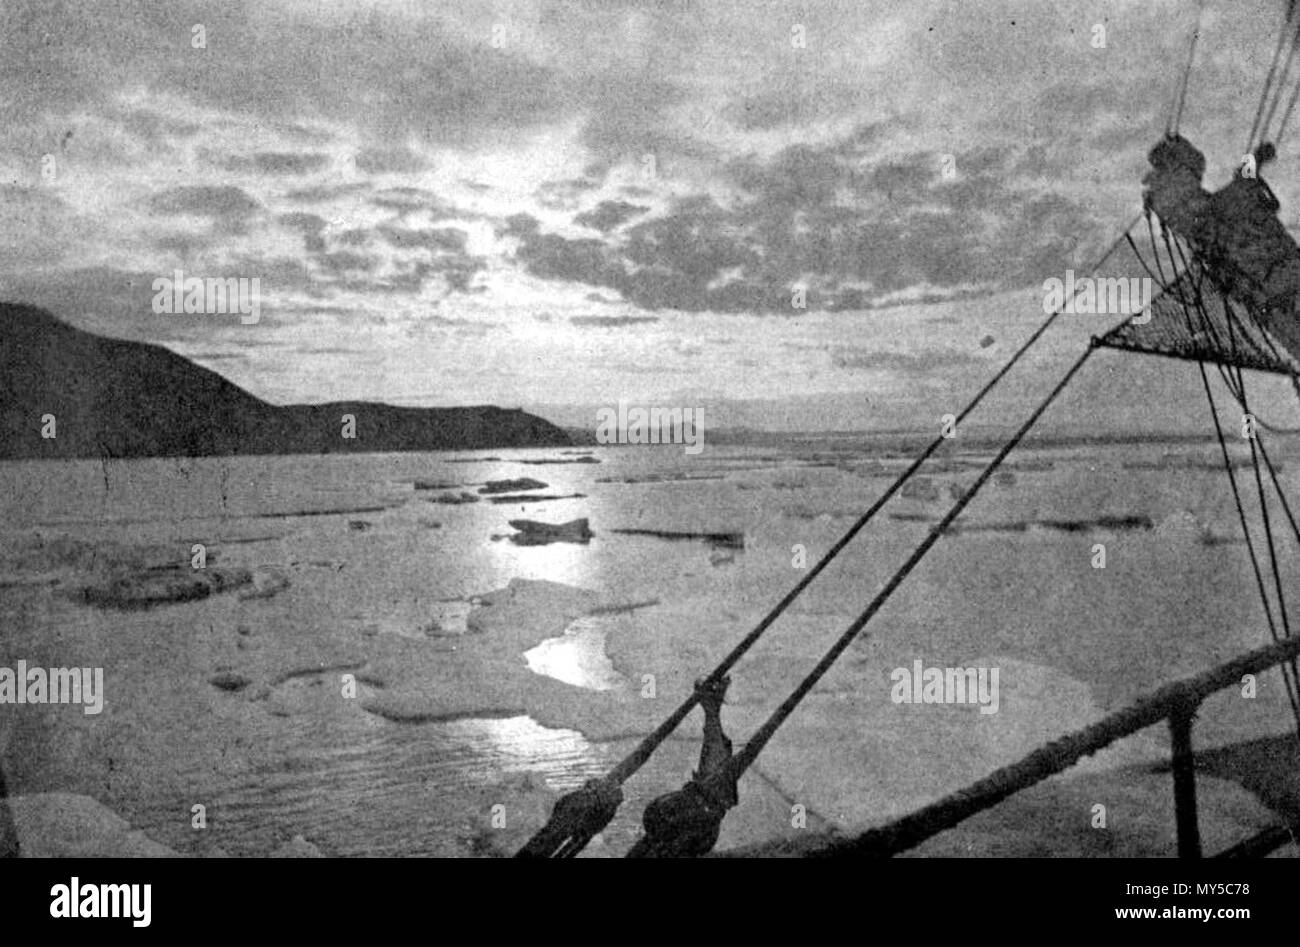 . Englisch: Eine arktische Morgen. 25. Juli 2011. Von einem Foto aus Cape Serdzekamen, Sibirien, von Dr. William J. Hamilton 404 Seite 97 - Kreuzfahrt von corwin Stockfoto